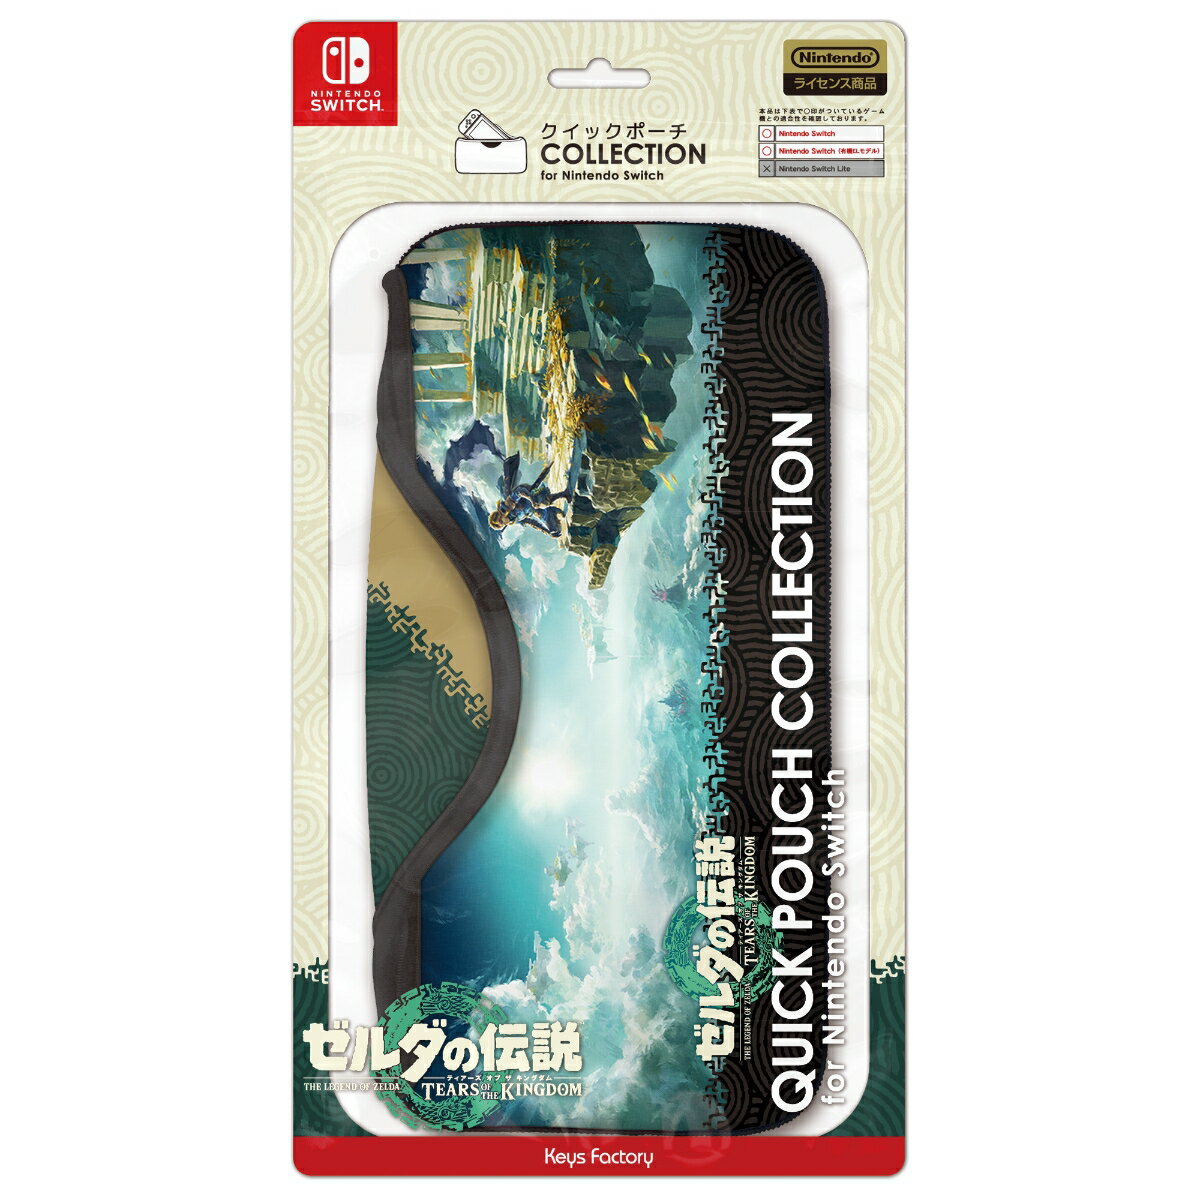 クイックポーチ COLLECTION for Nintendo Switch (ゼルダの伝説 ティアーズ オブ ザ キングダム)